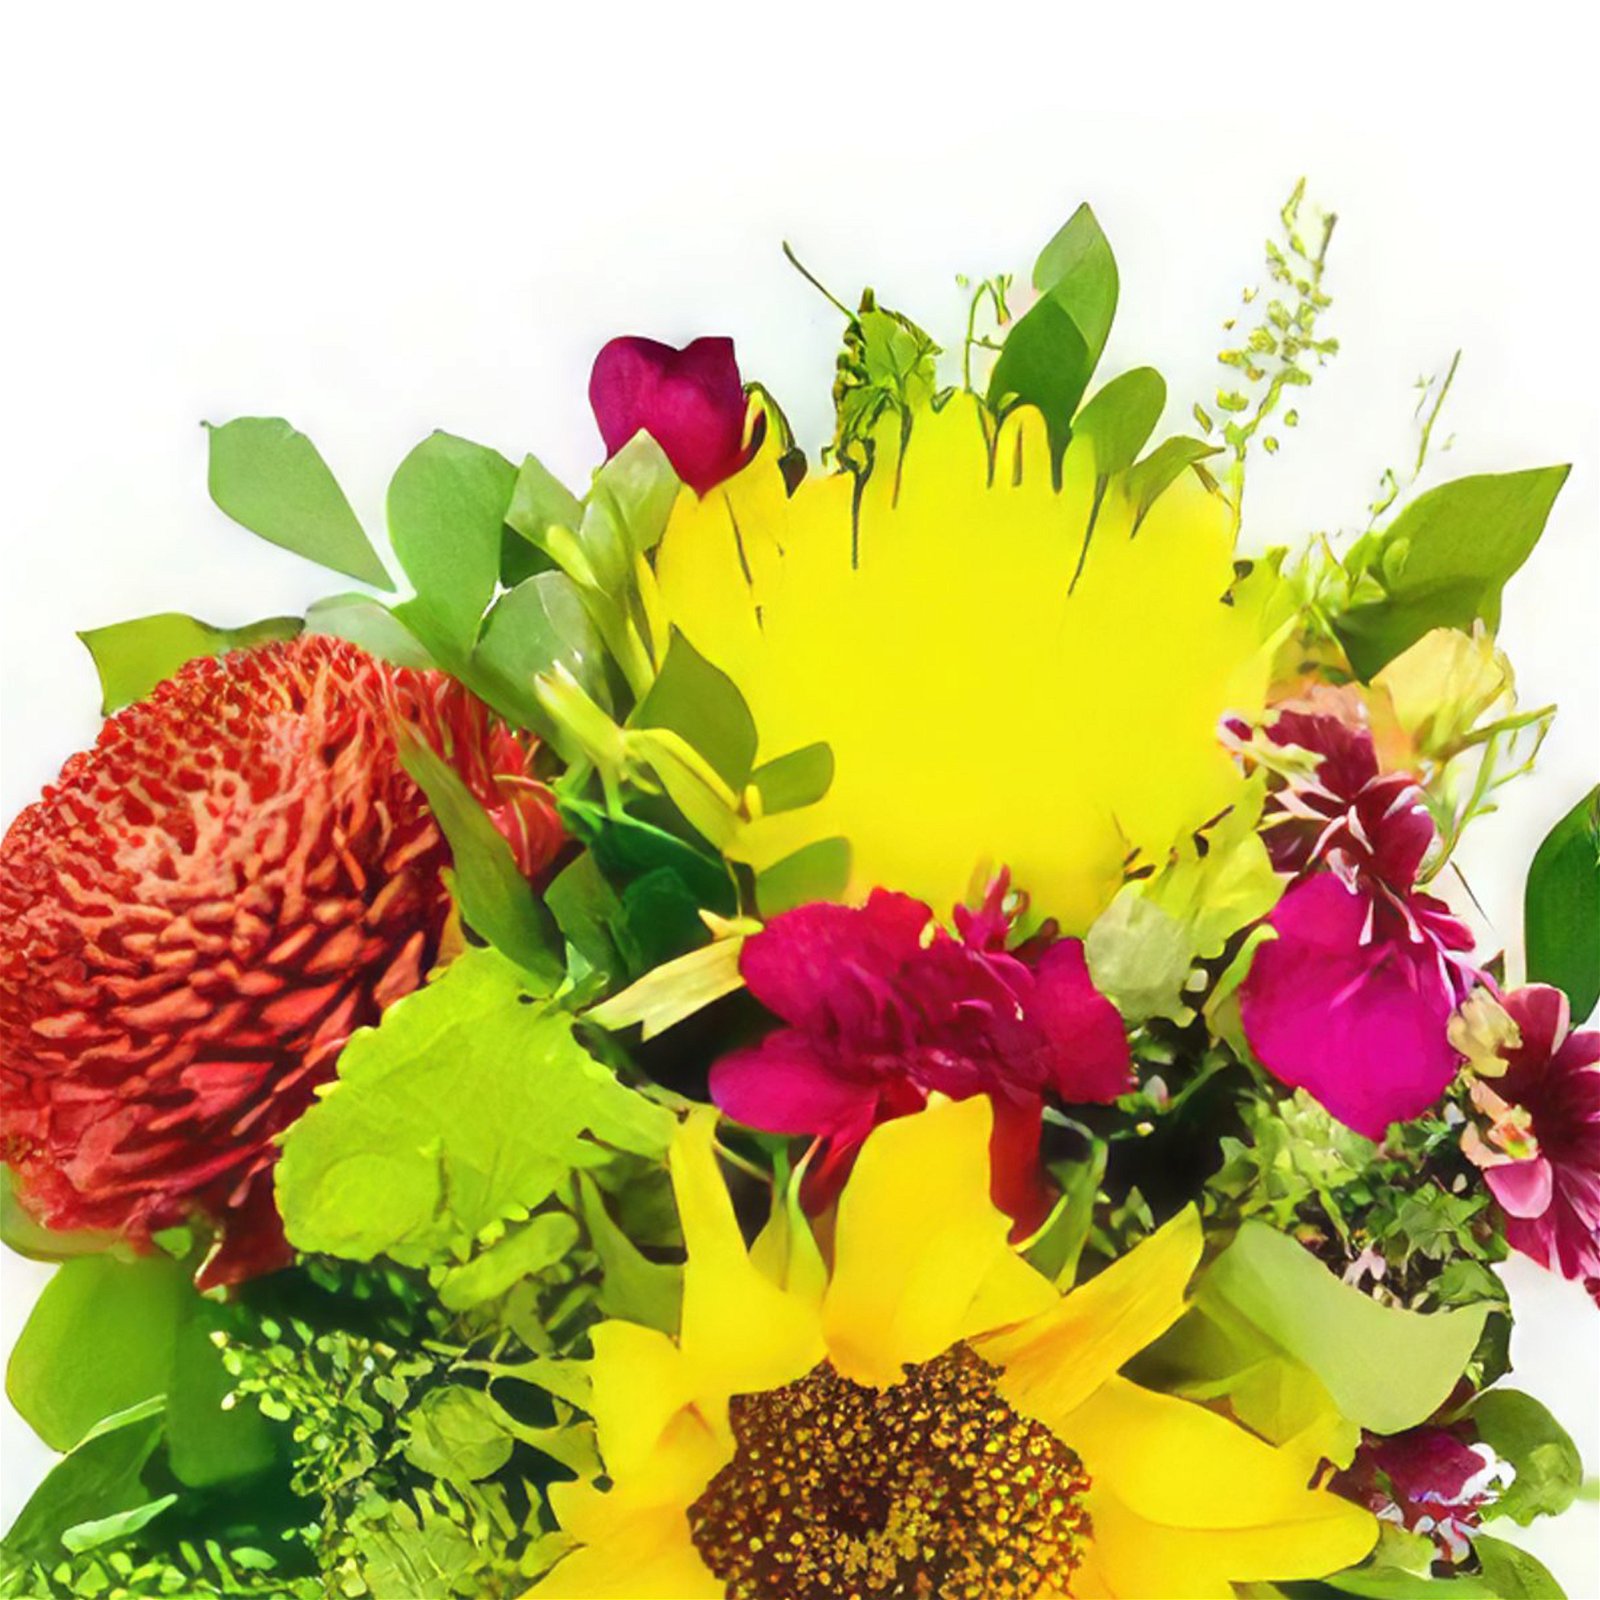 flores de Guanabacoa- Amor de Primavera Bouquet/arranjo de flor